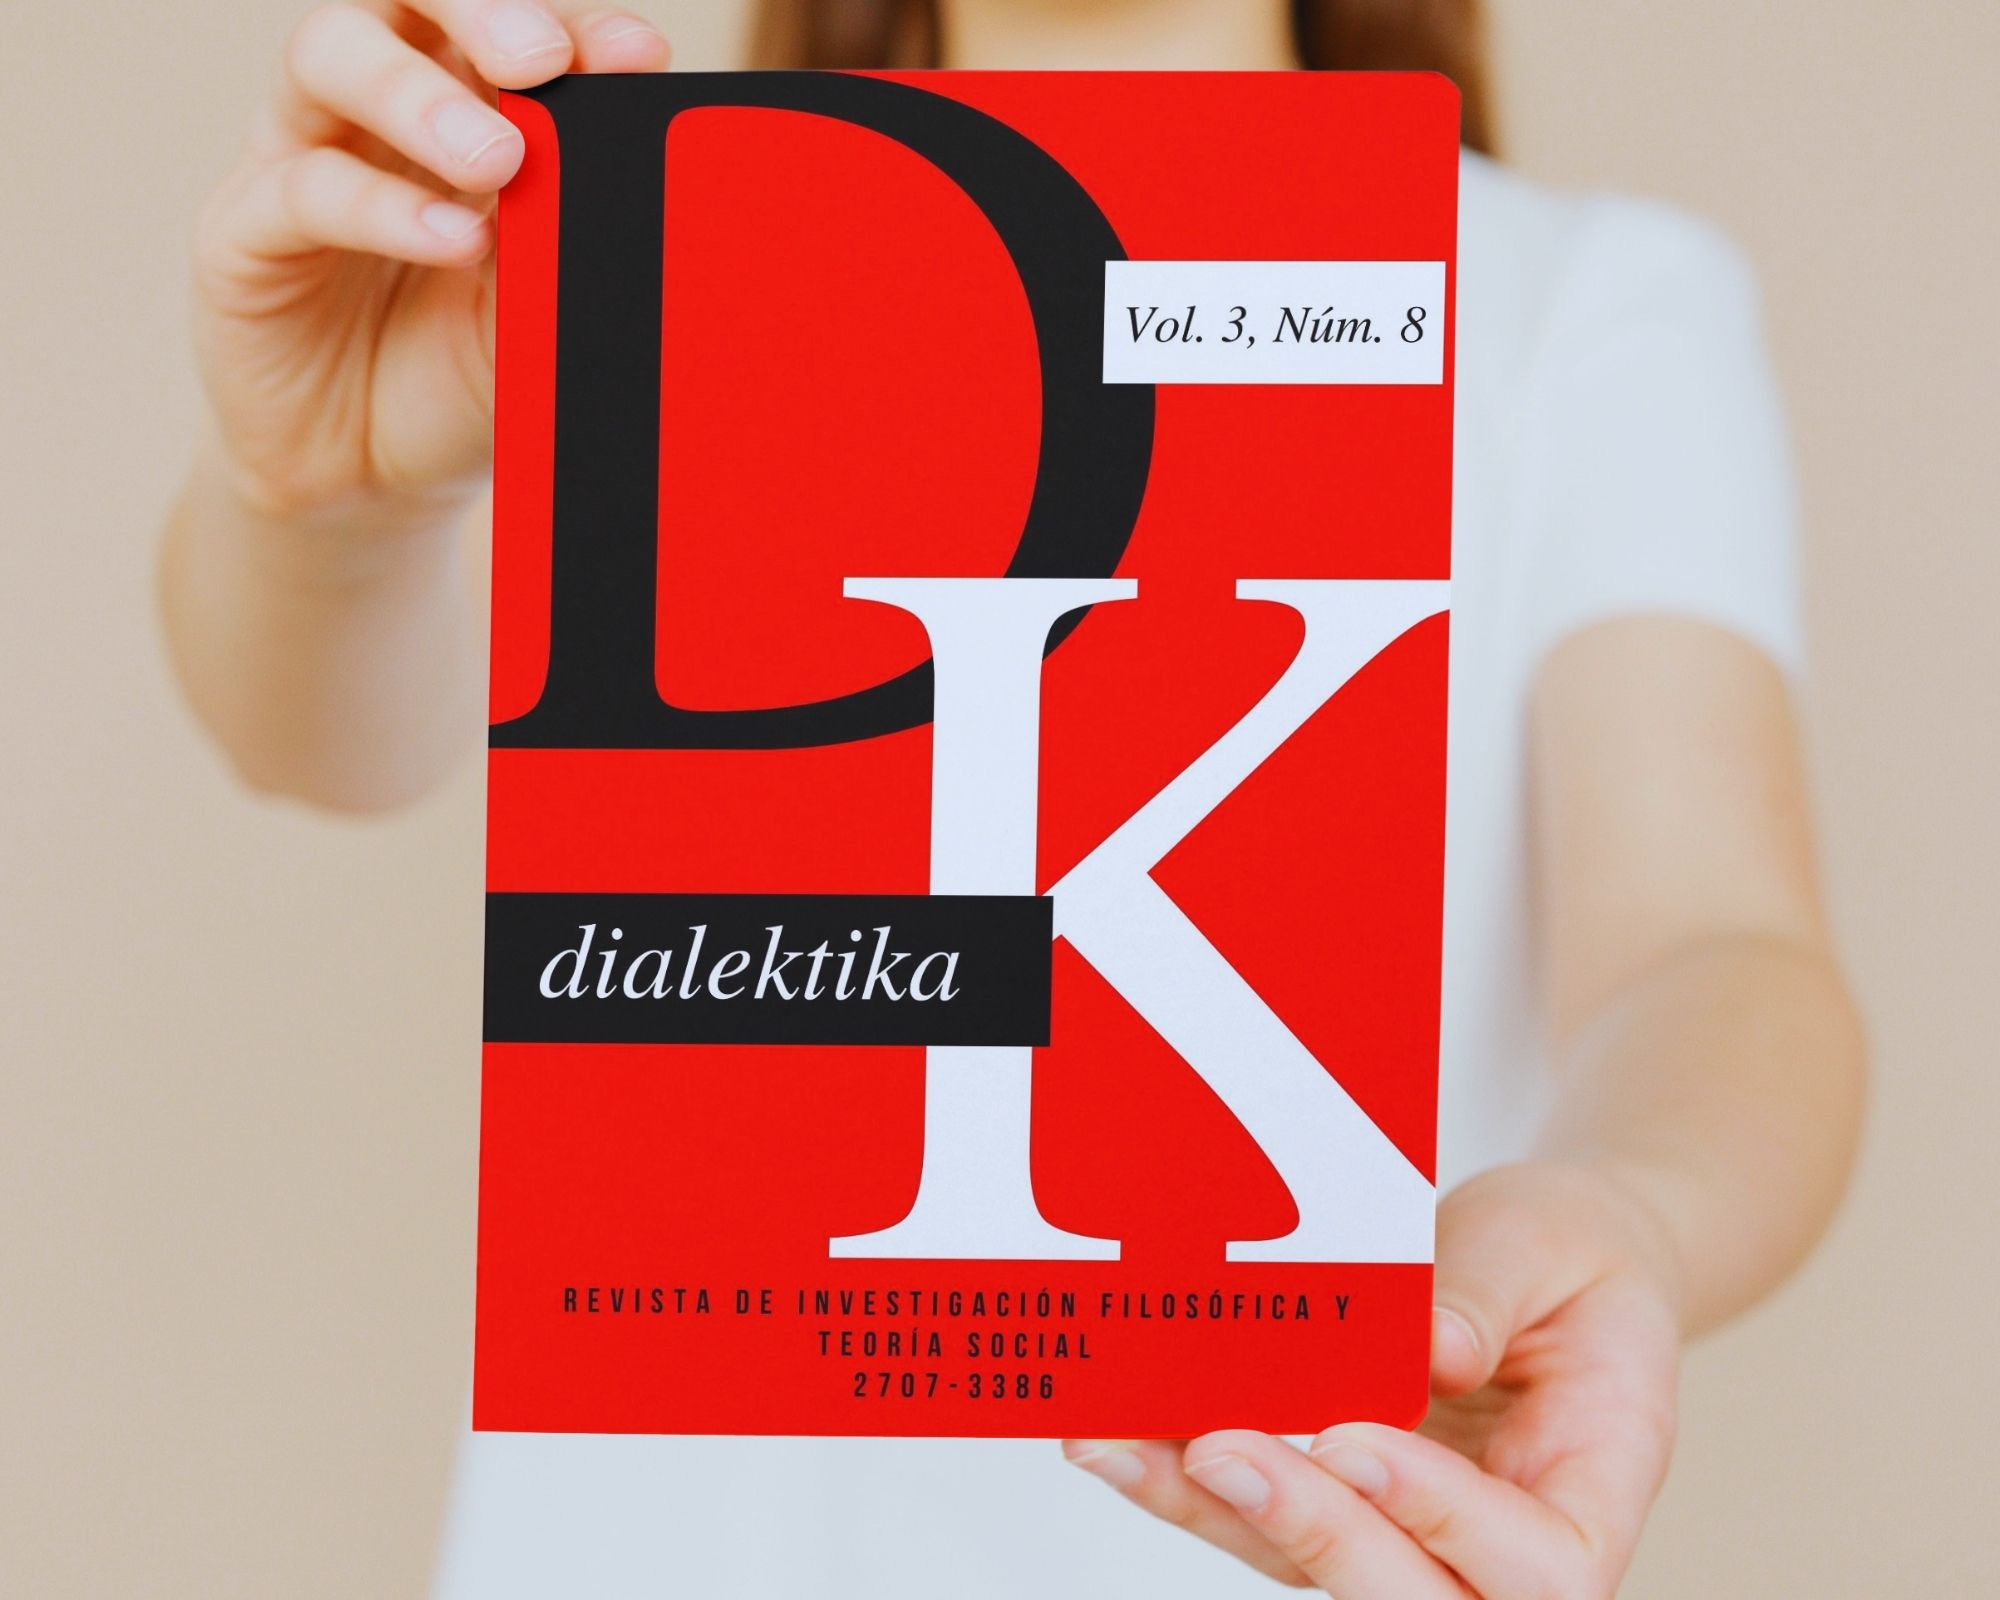 Dialektika en The philosopher's index